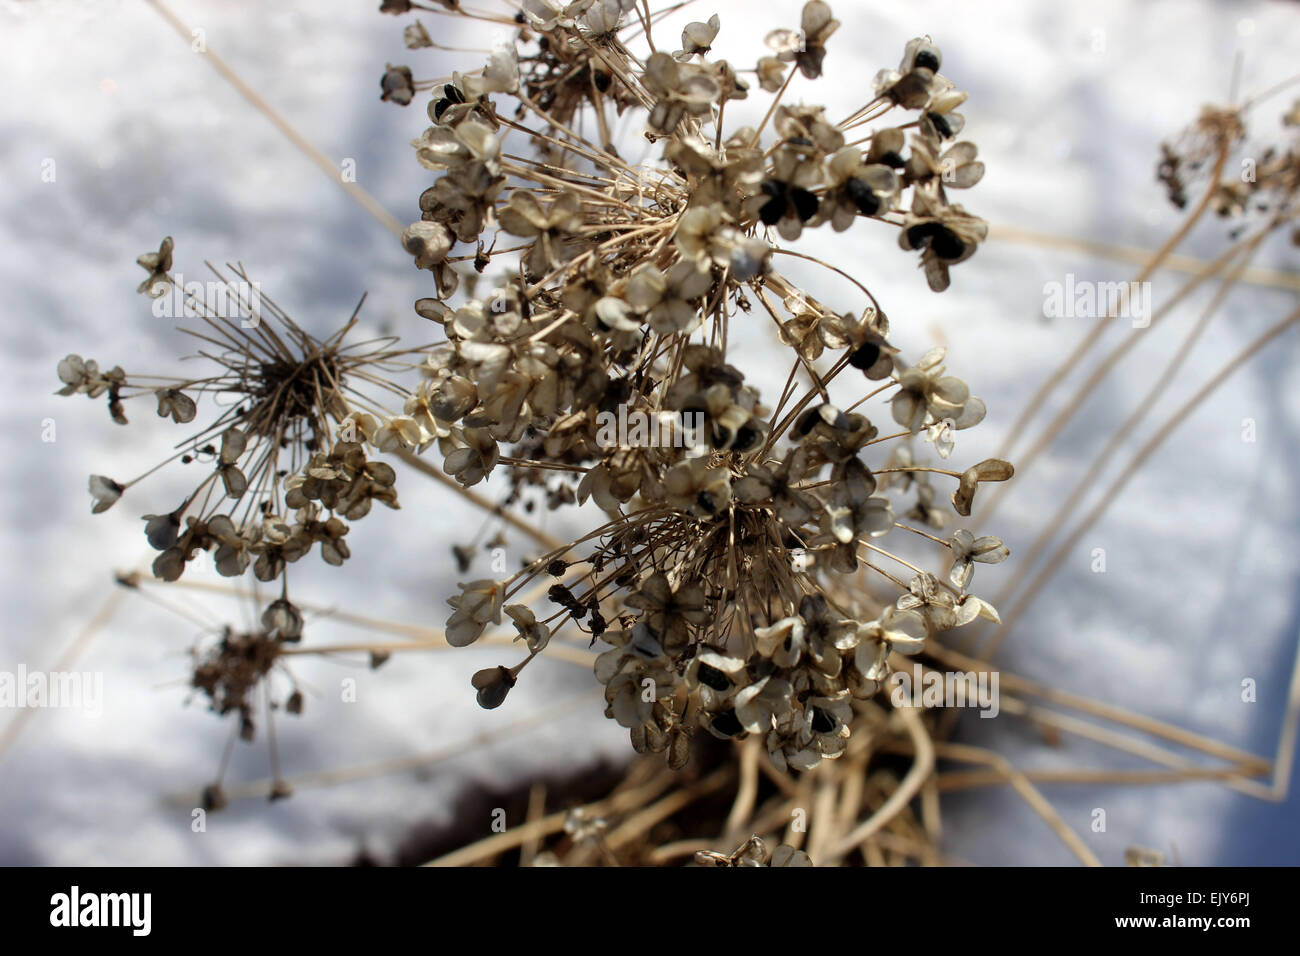 Dettagli fotografici di fioritura delle piante che sopravvivono al canadese crescente invernale sulla neve Foto Stock